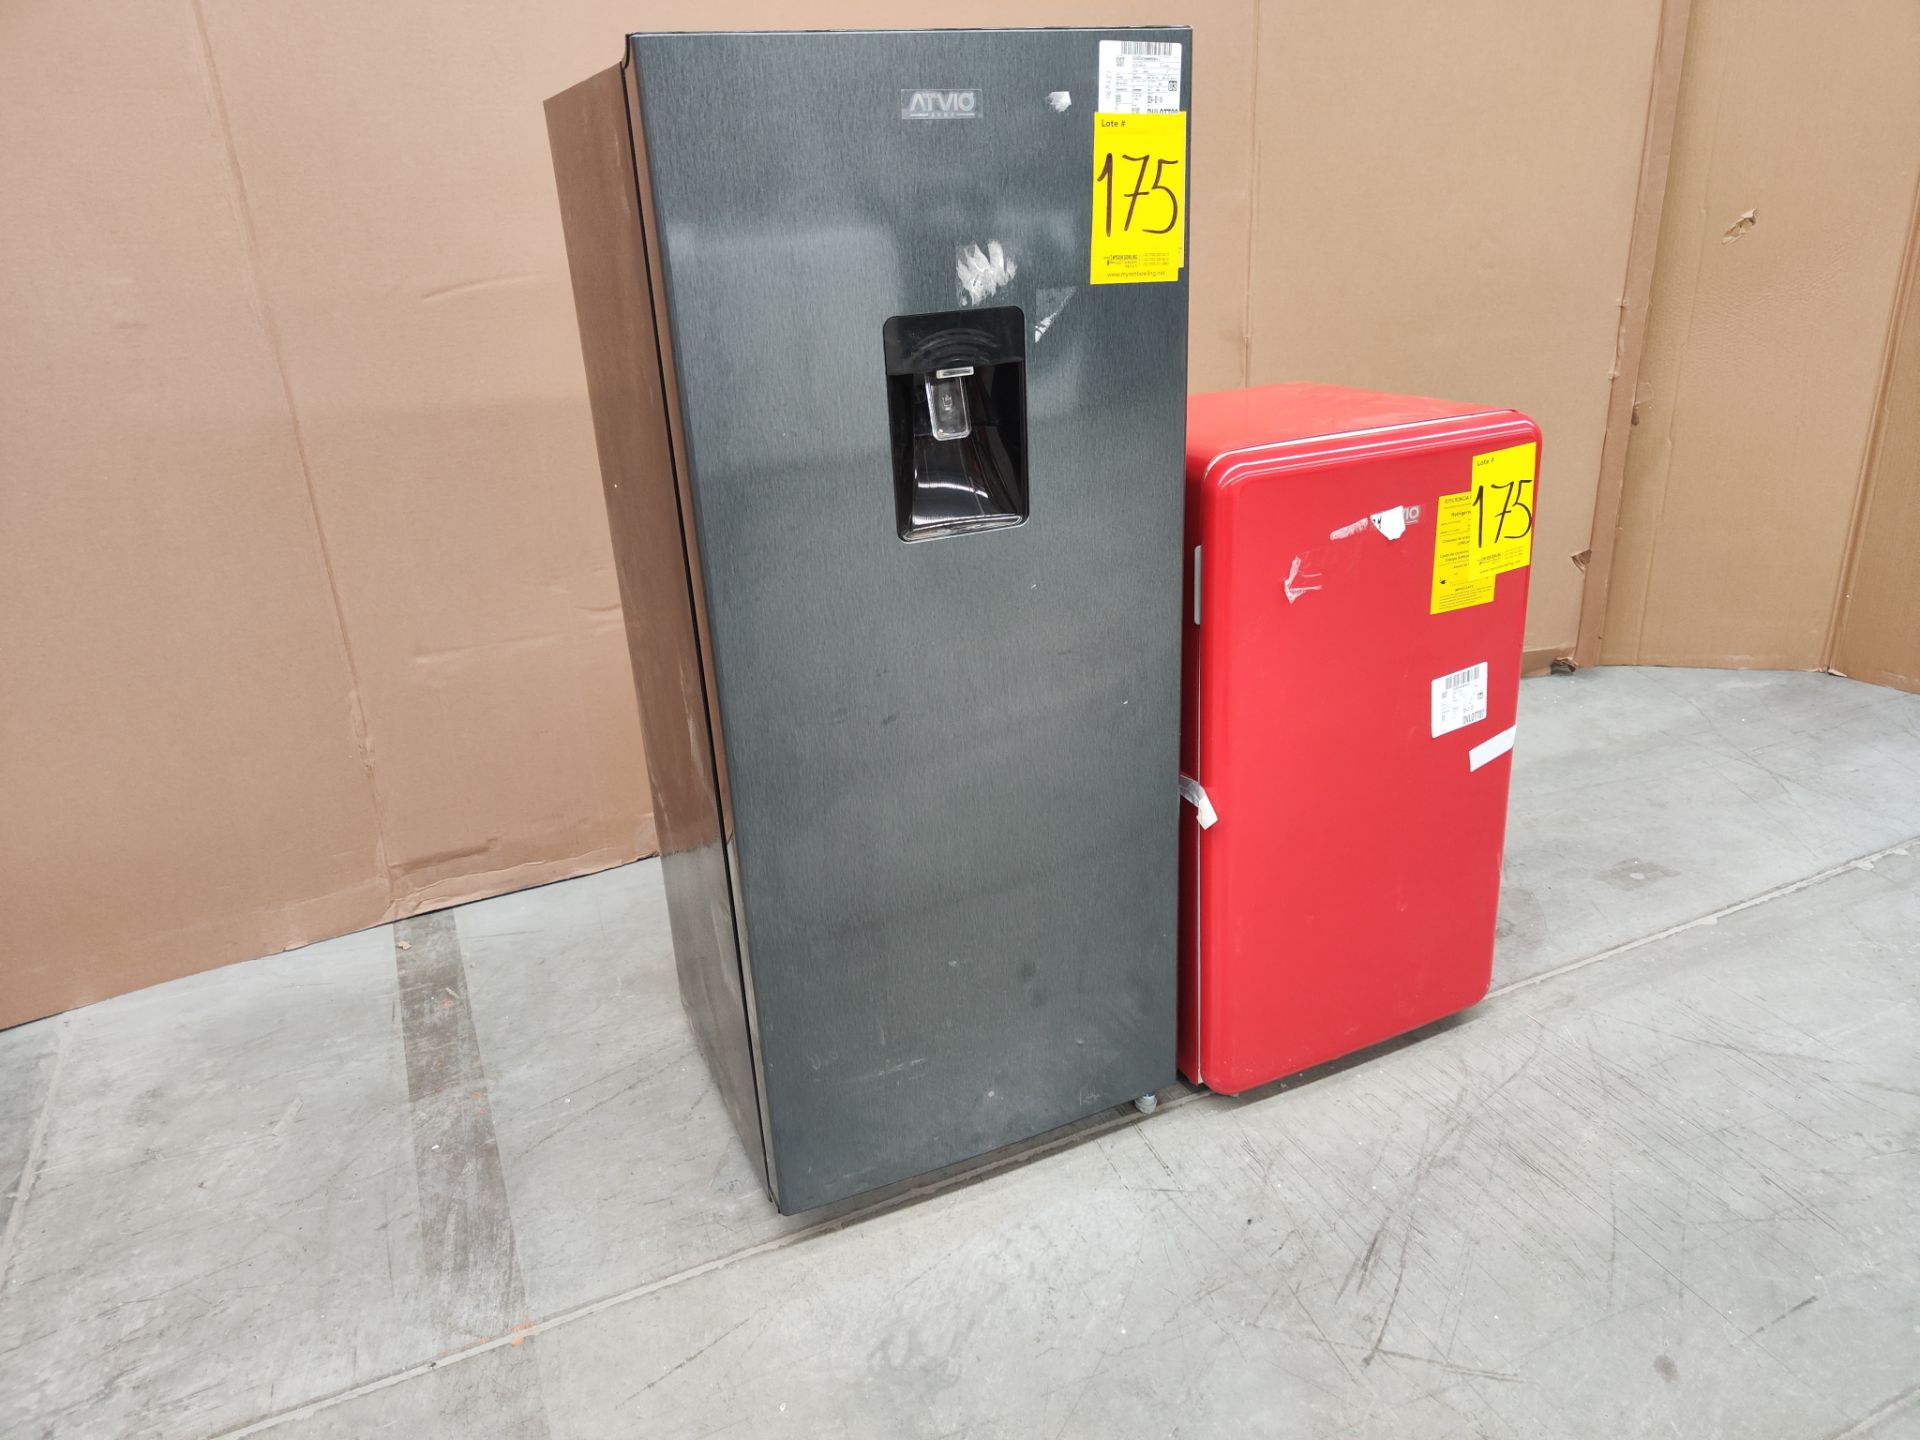 Lote de refrigerador y minibar contiene: 1 Refrigerador Marca ATVIO, Modelo AT-6.6URS, Serie 1310040 - Image 3 of 6